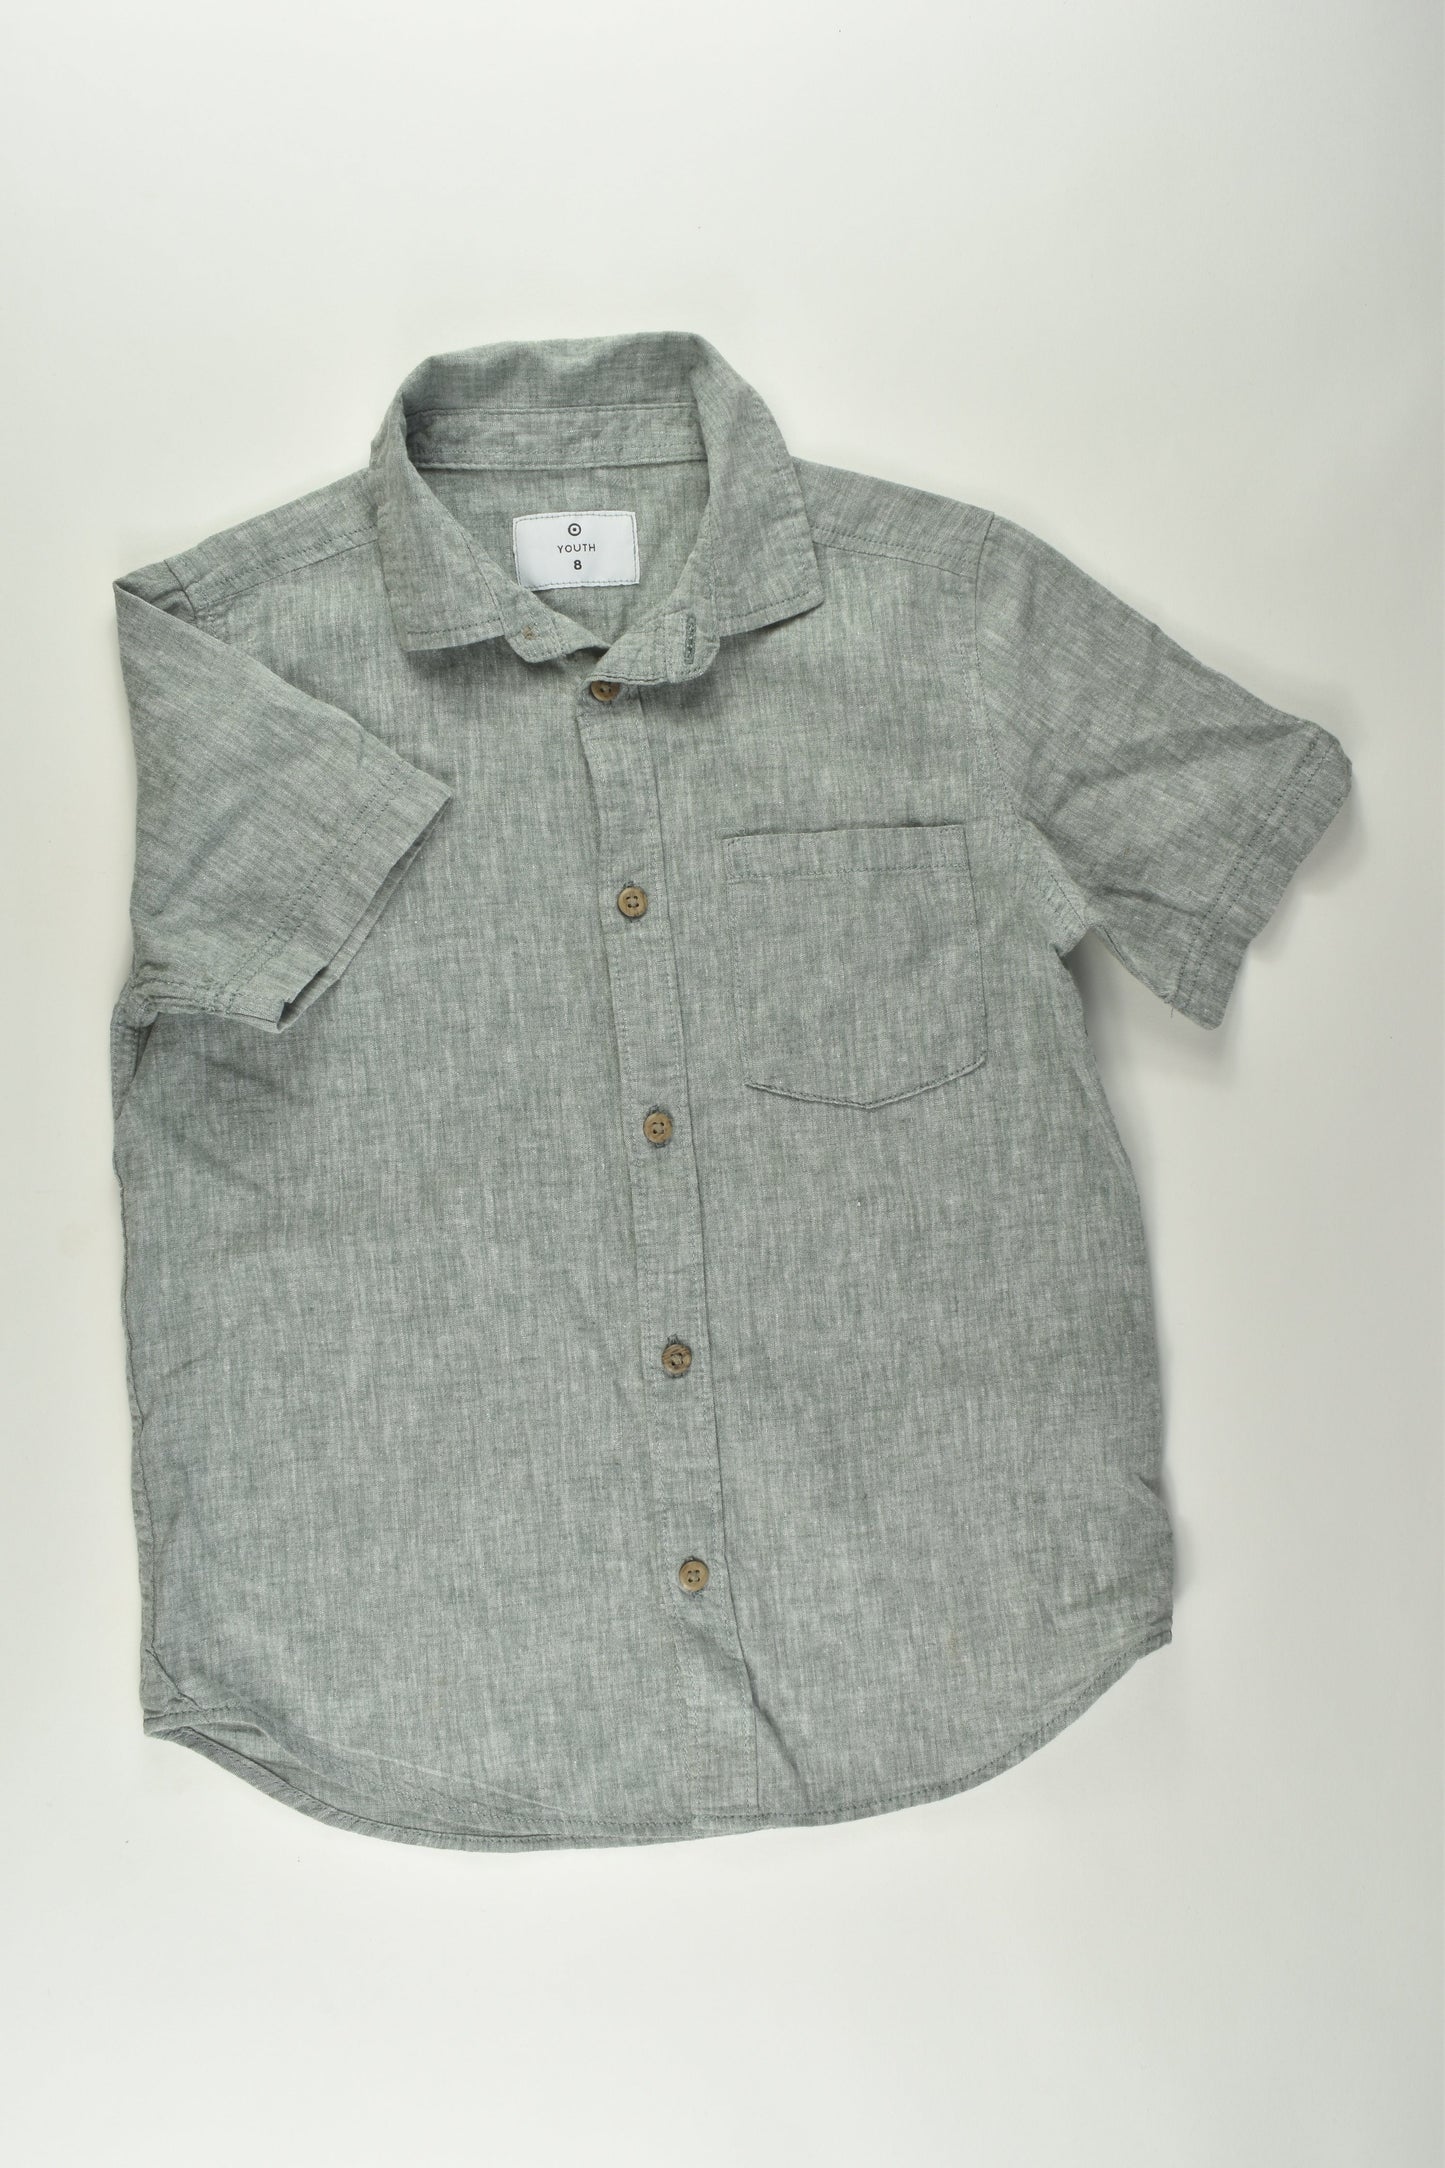 Target Size 8 Linen Blend Button-up Shirt